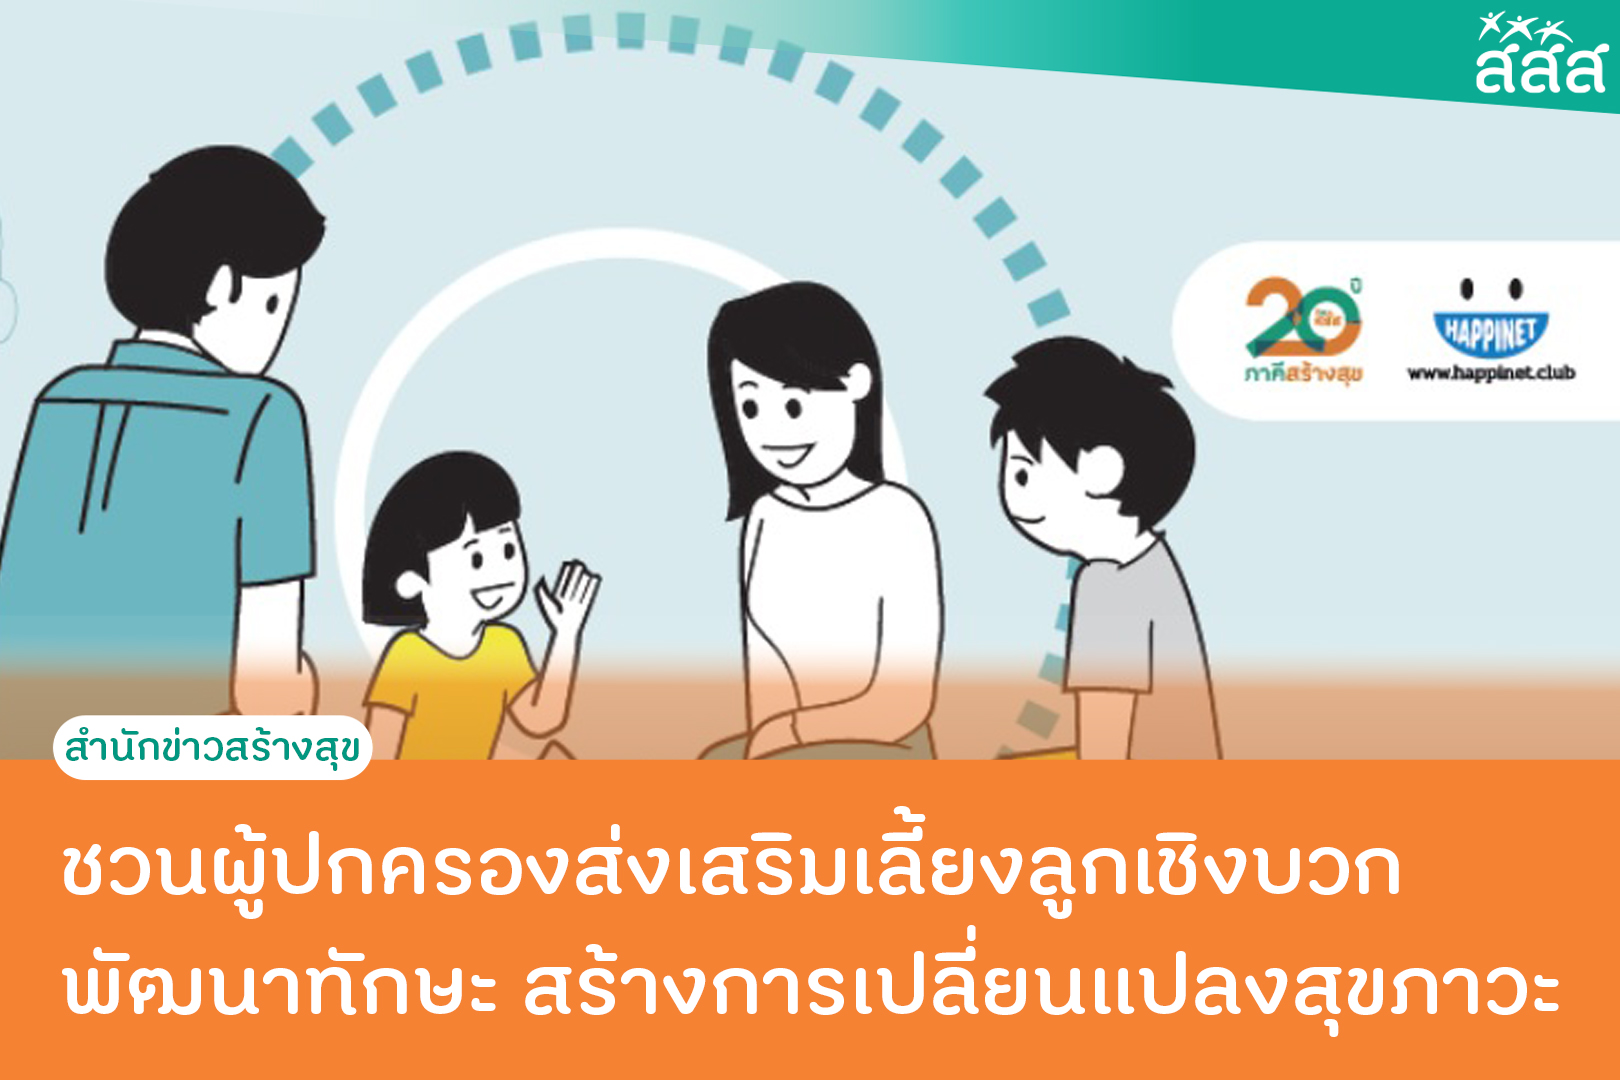 ชวนผู้ปกครองส่งเสริมเลี้ยงลูกเชิงบวก  พัฒนาทักษะ สร้างการเปลี่ยนแปลงสุขภาวะ thaihealth